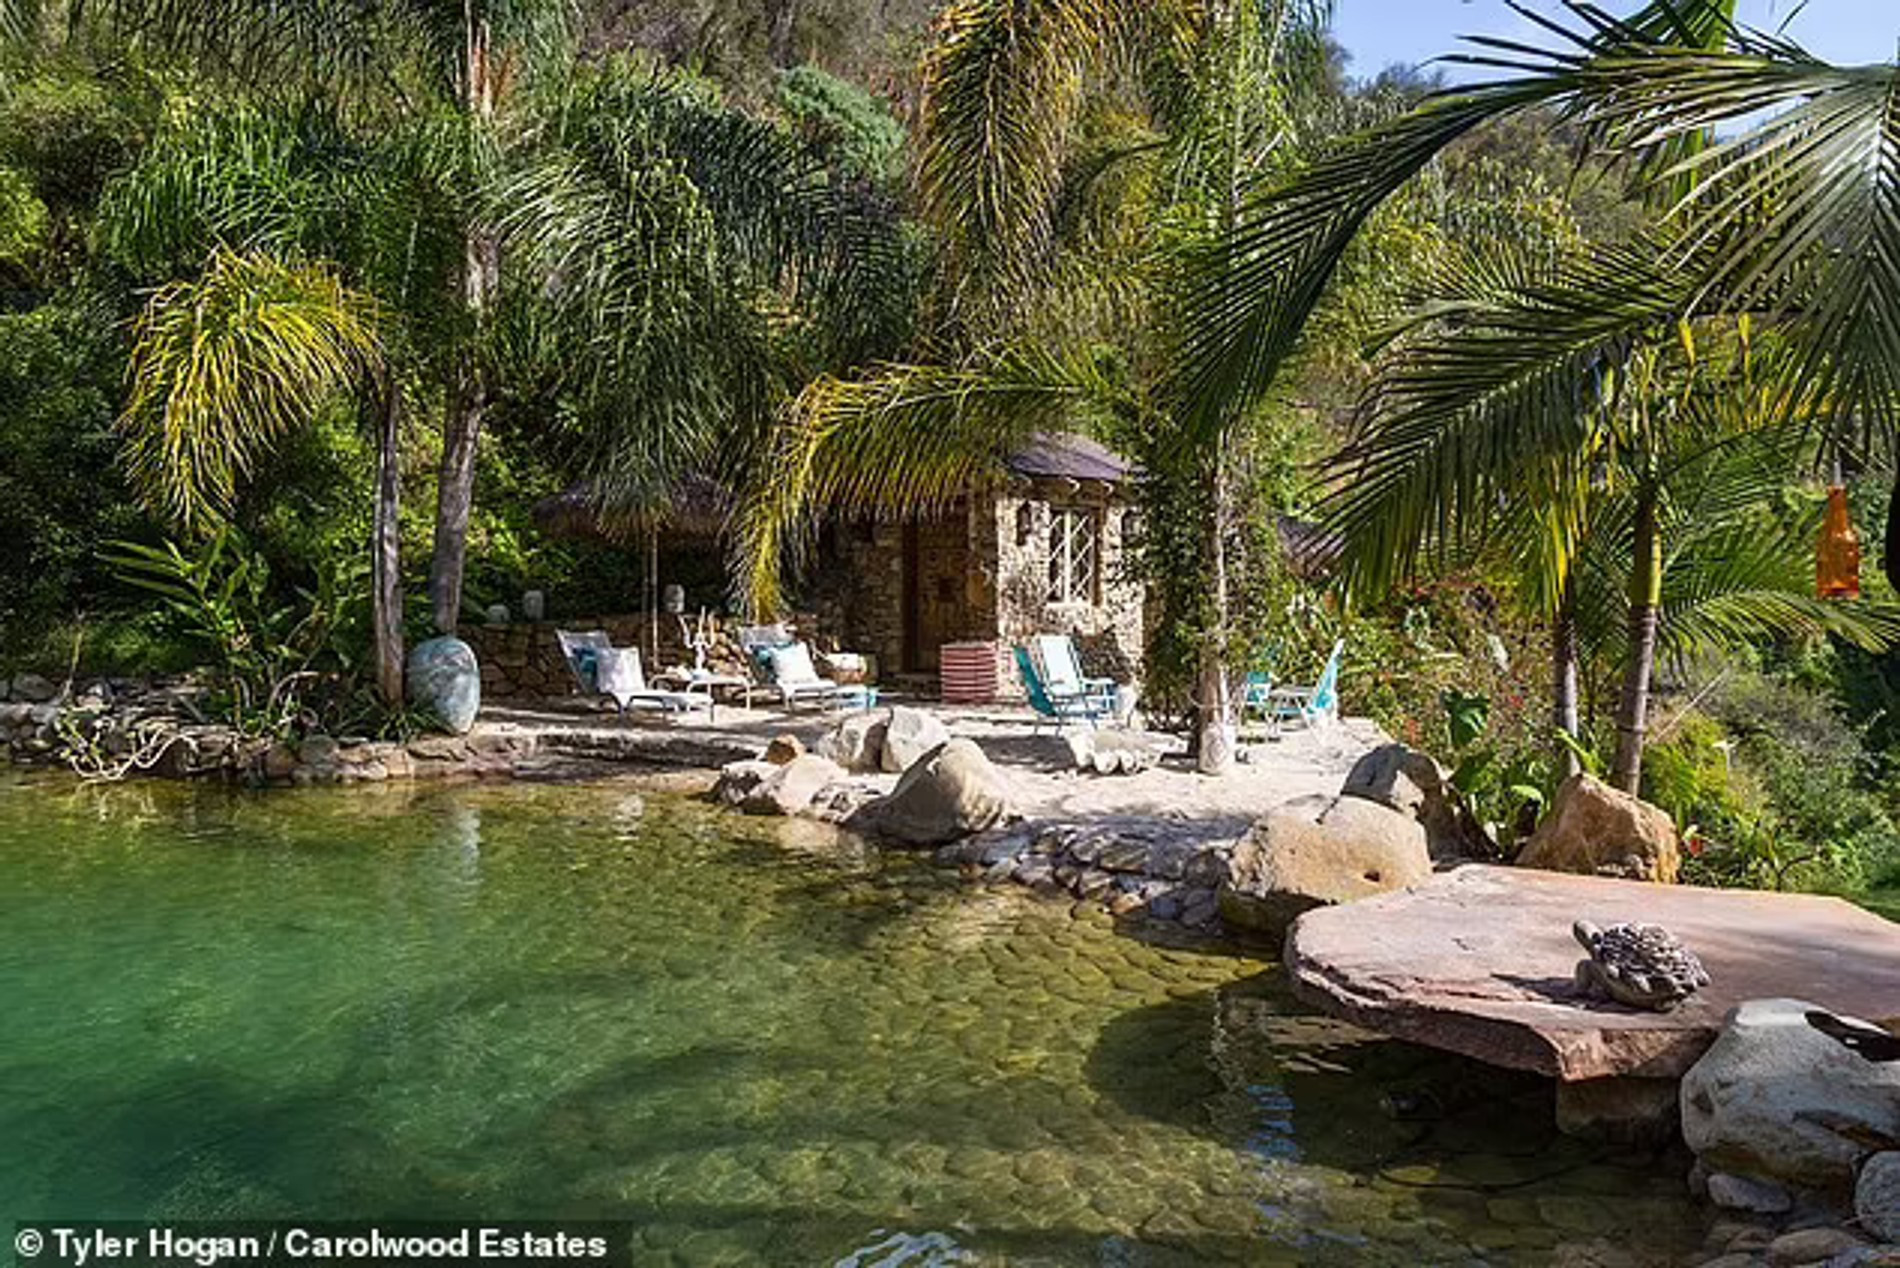 Дом Дженнифер Лопес в Калифорнии. Фото: Daily Mail